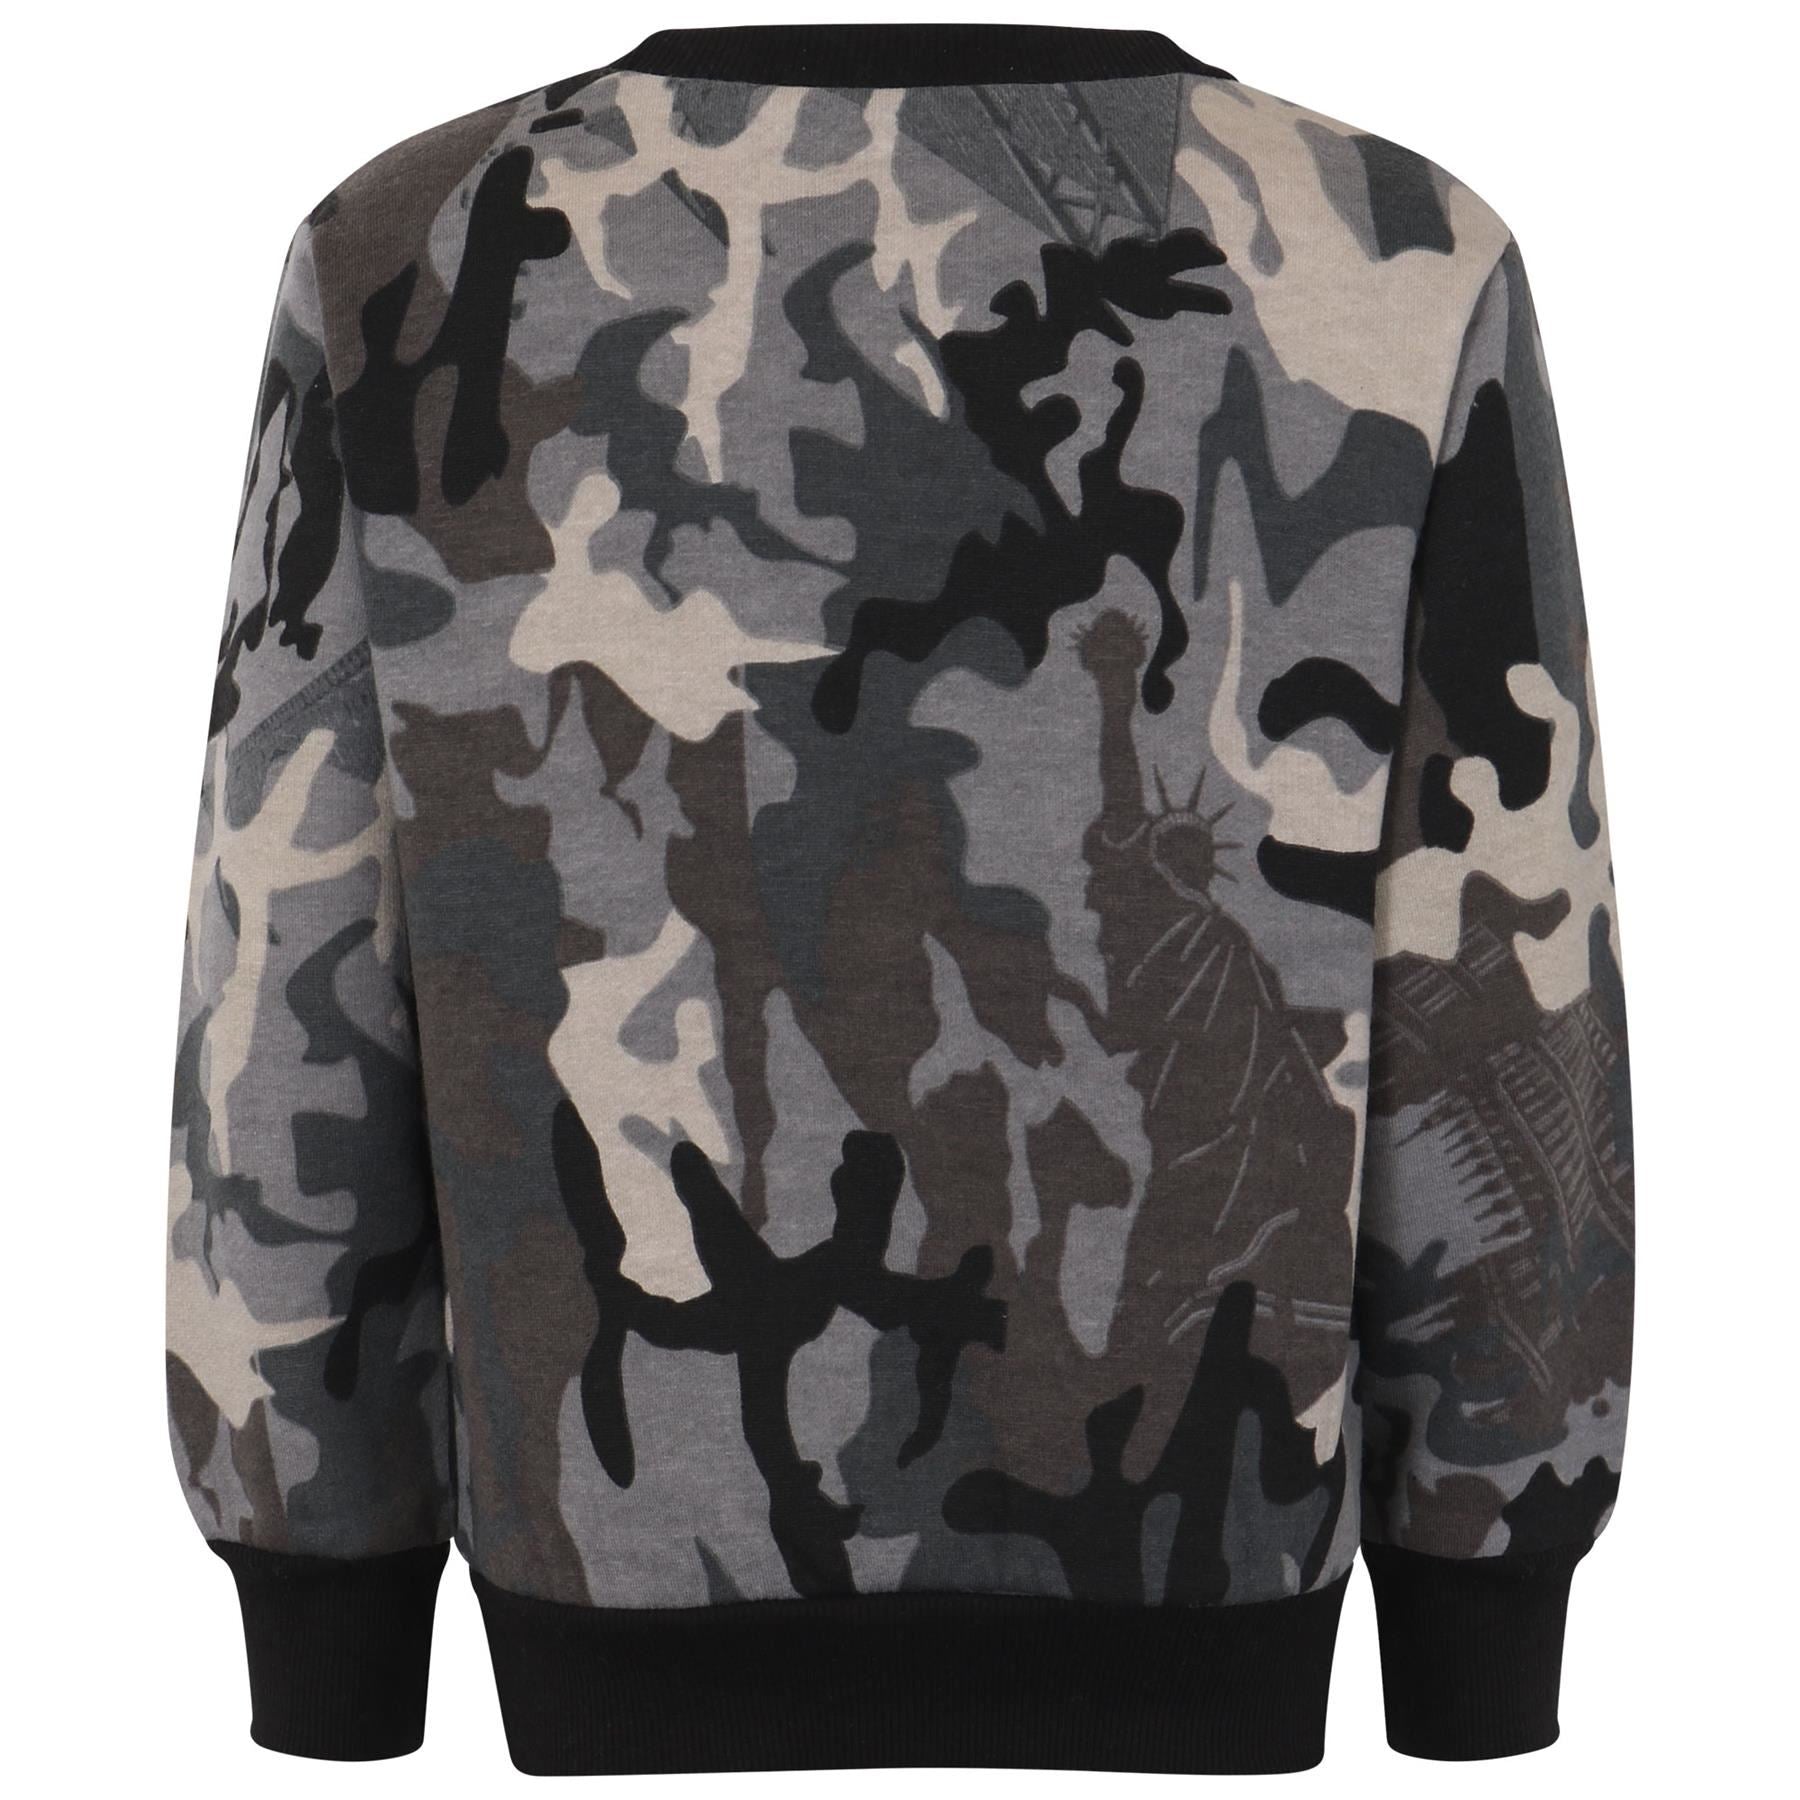 Girls Boys Charcoal Camouflage Sweatshirt & Bottom Tracksuit